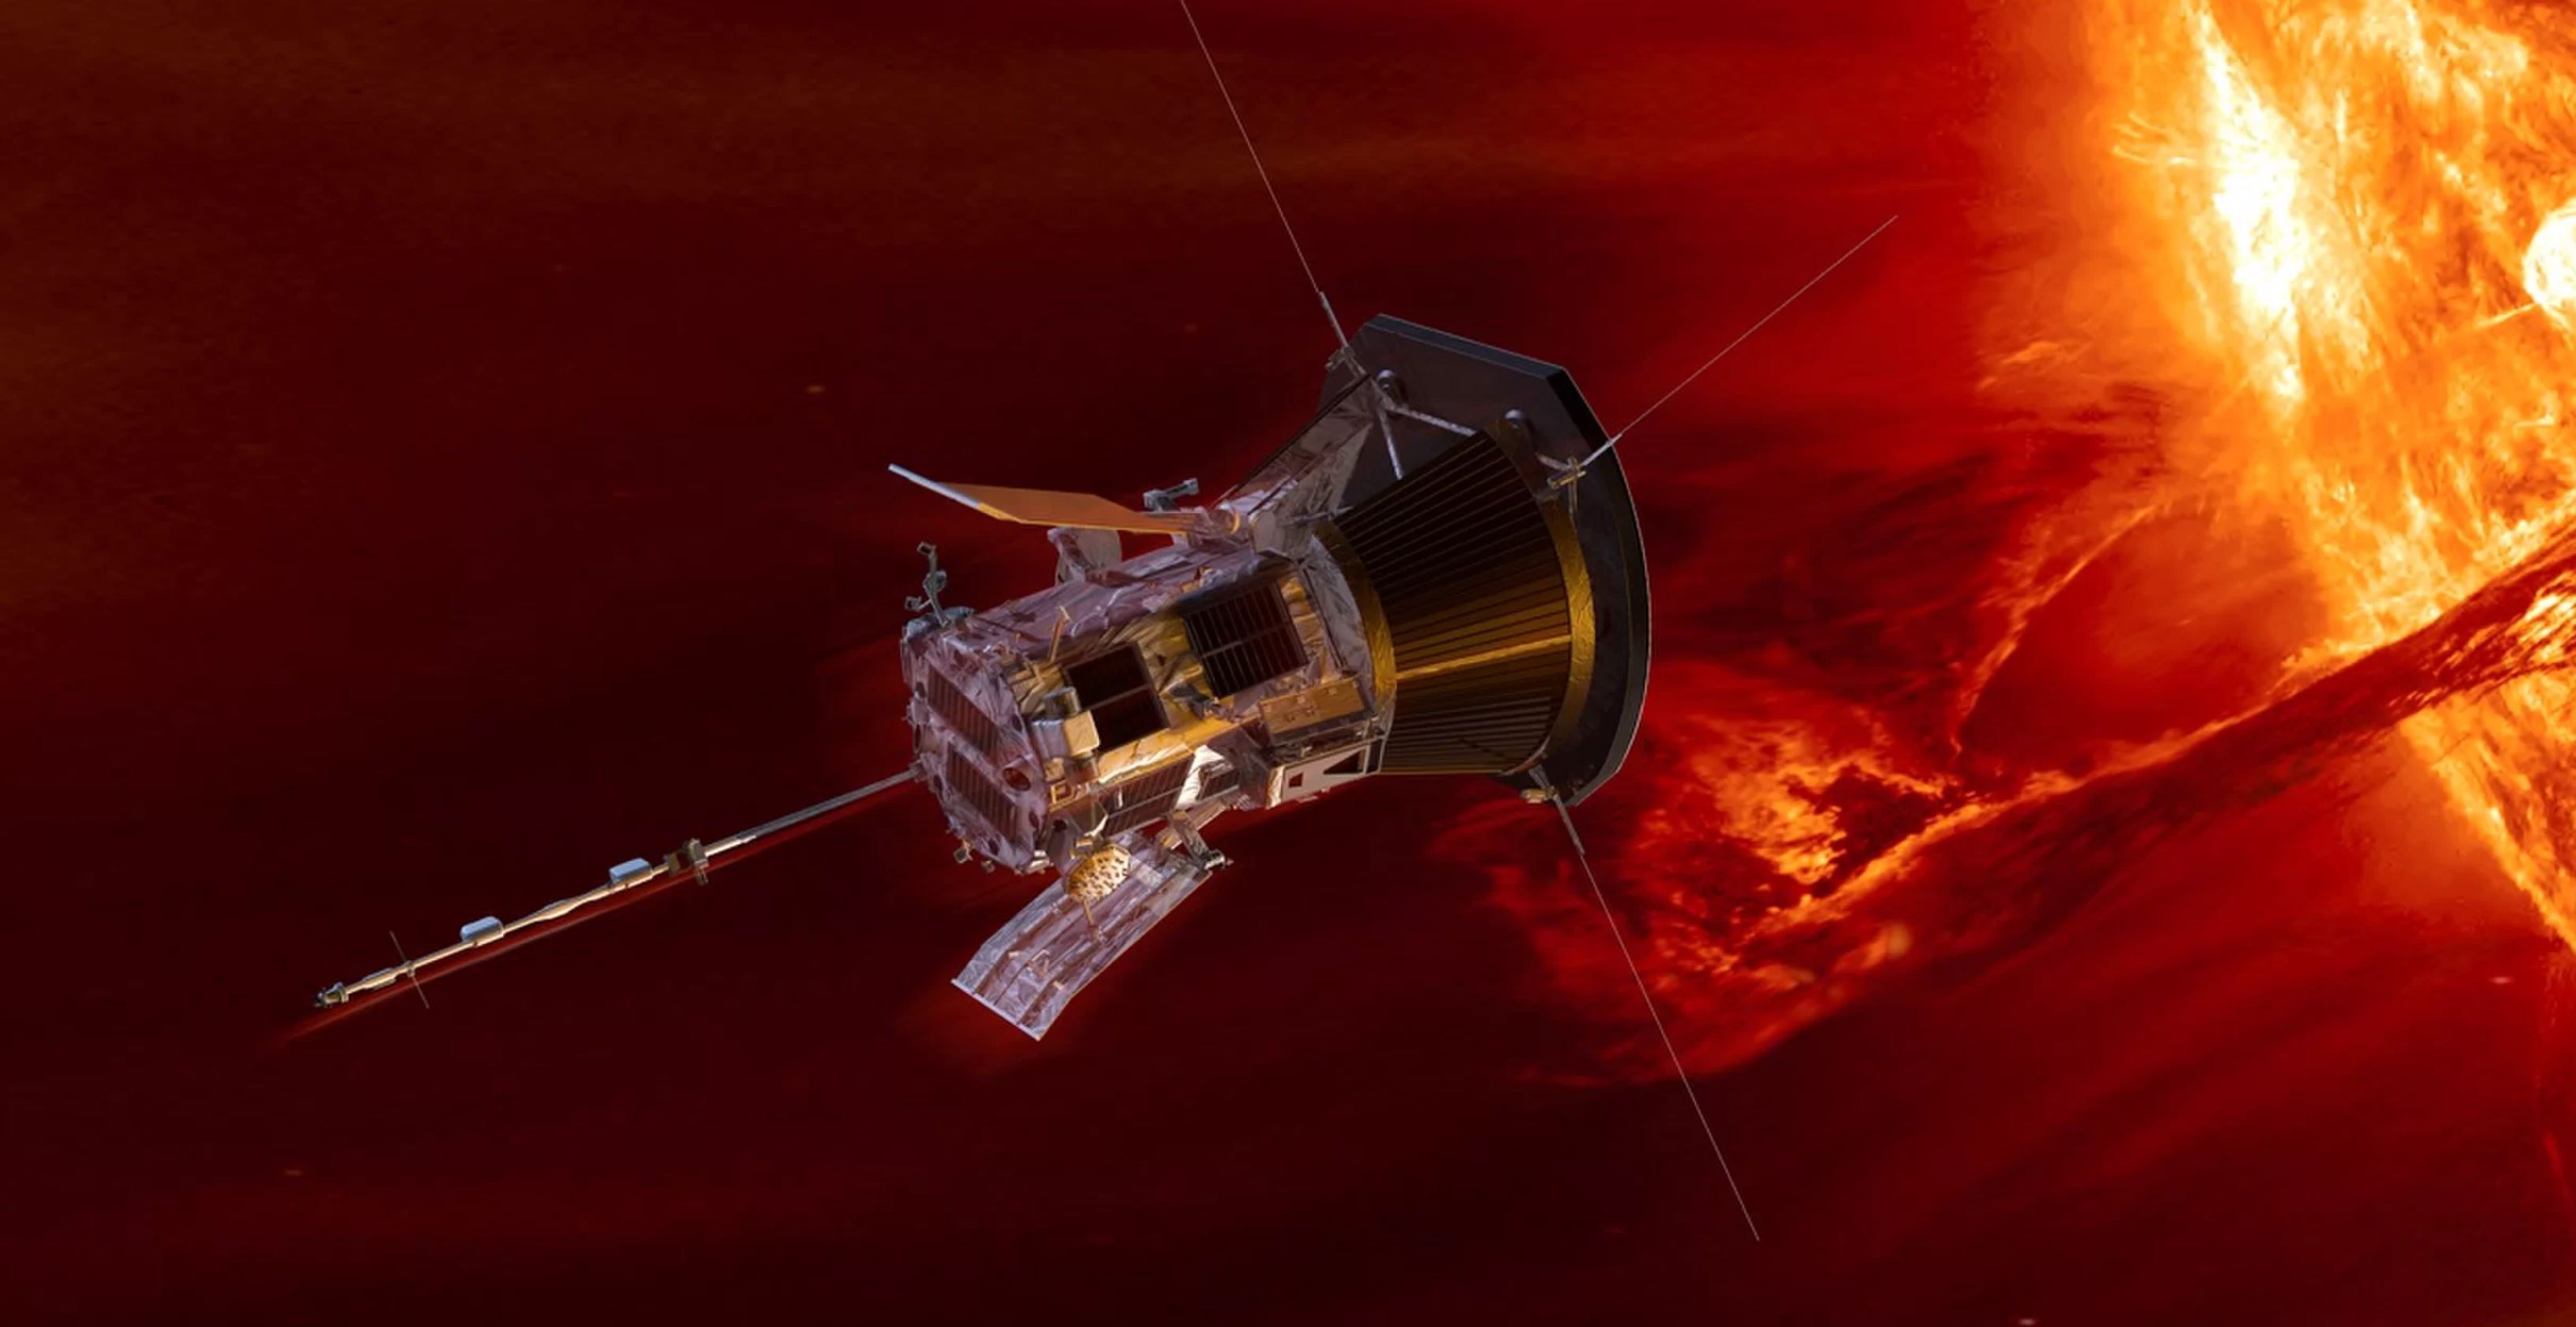 Солнечный зонд Parker зафиксировал плазменные вихри вблизи Солнца - Техно